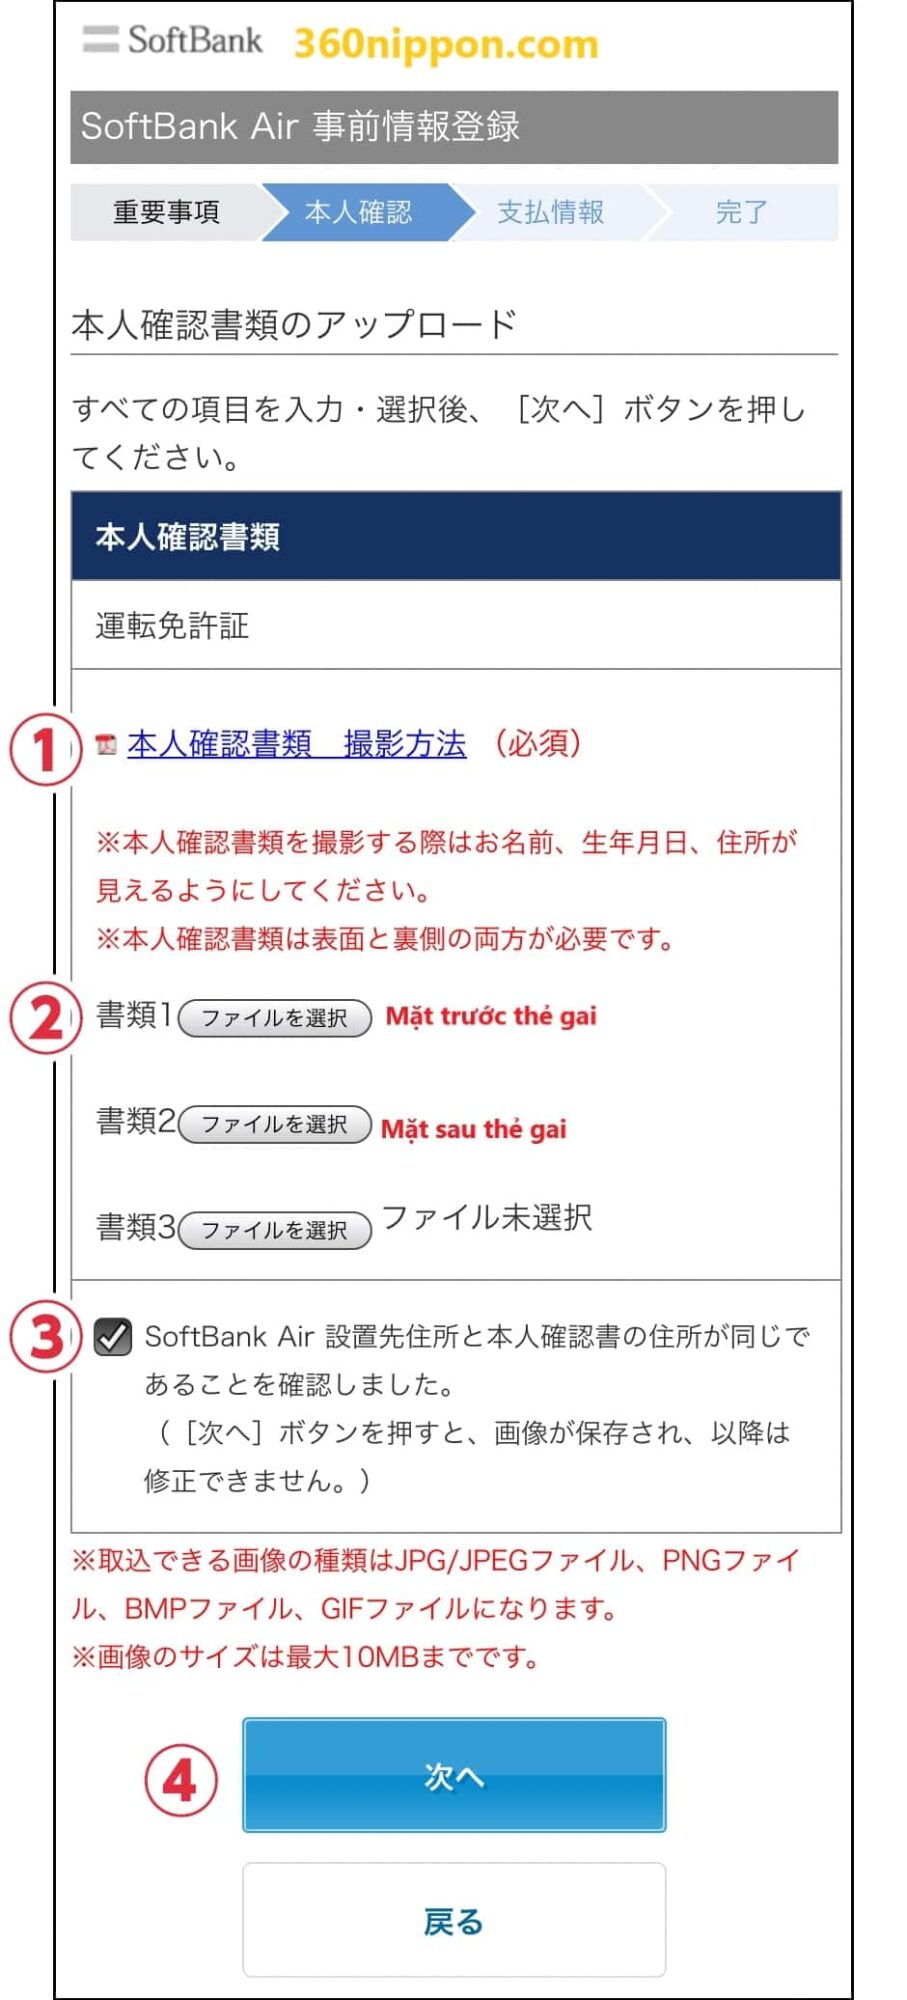 Hướng dẫn cách tự đăng ký wifi cố định softbank ở Nhật 56